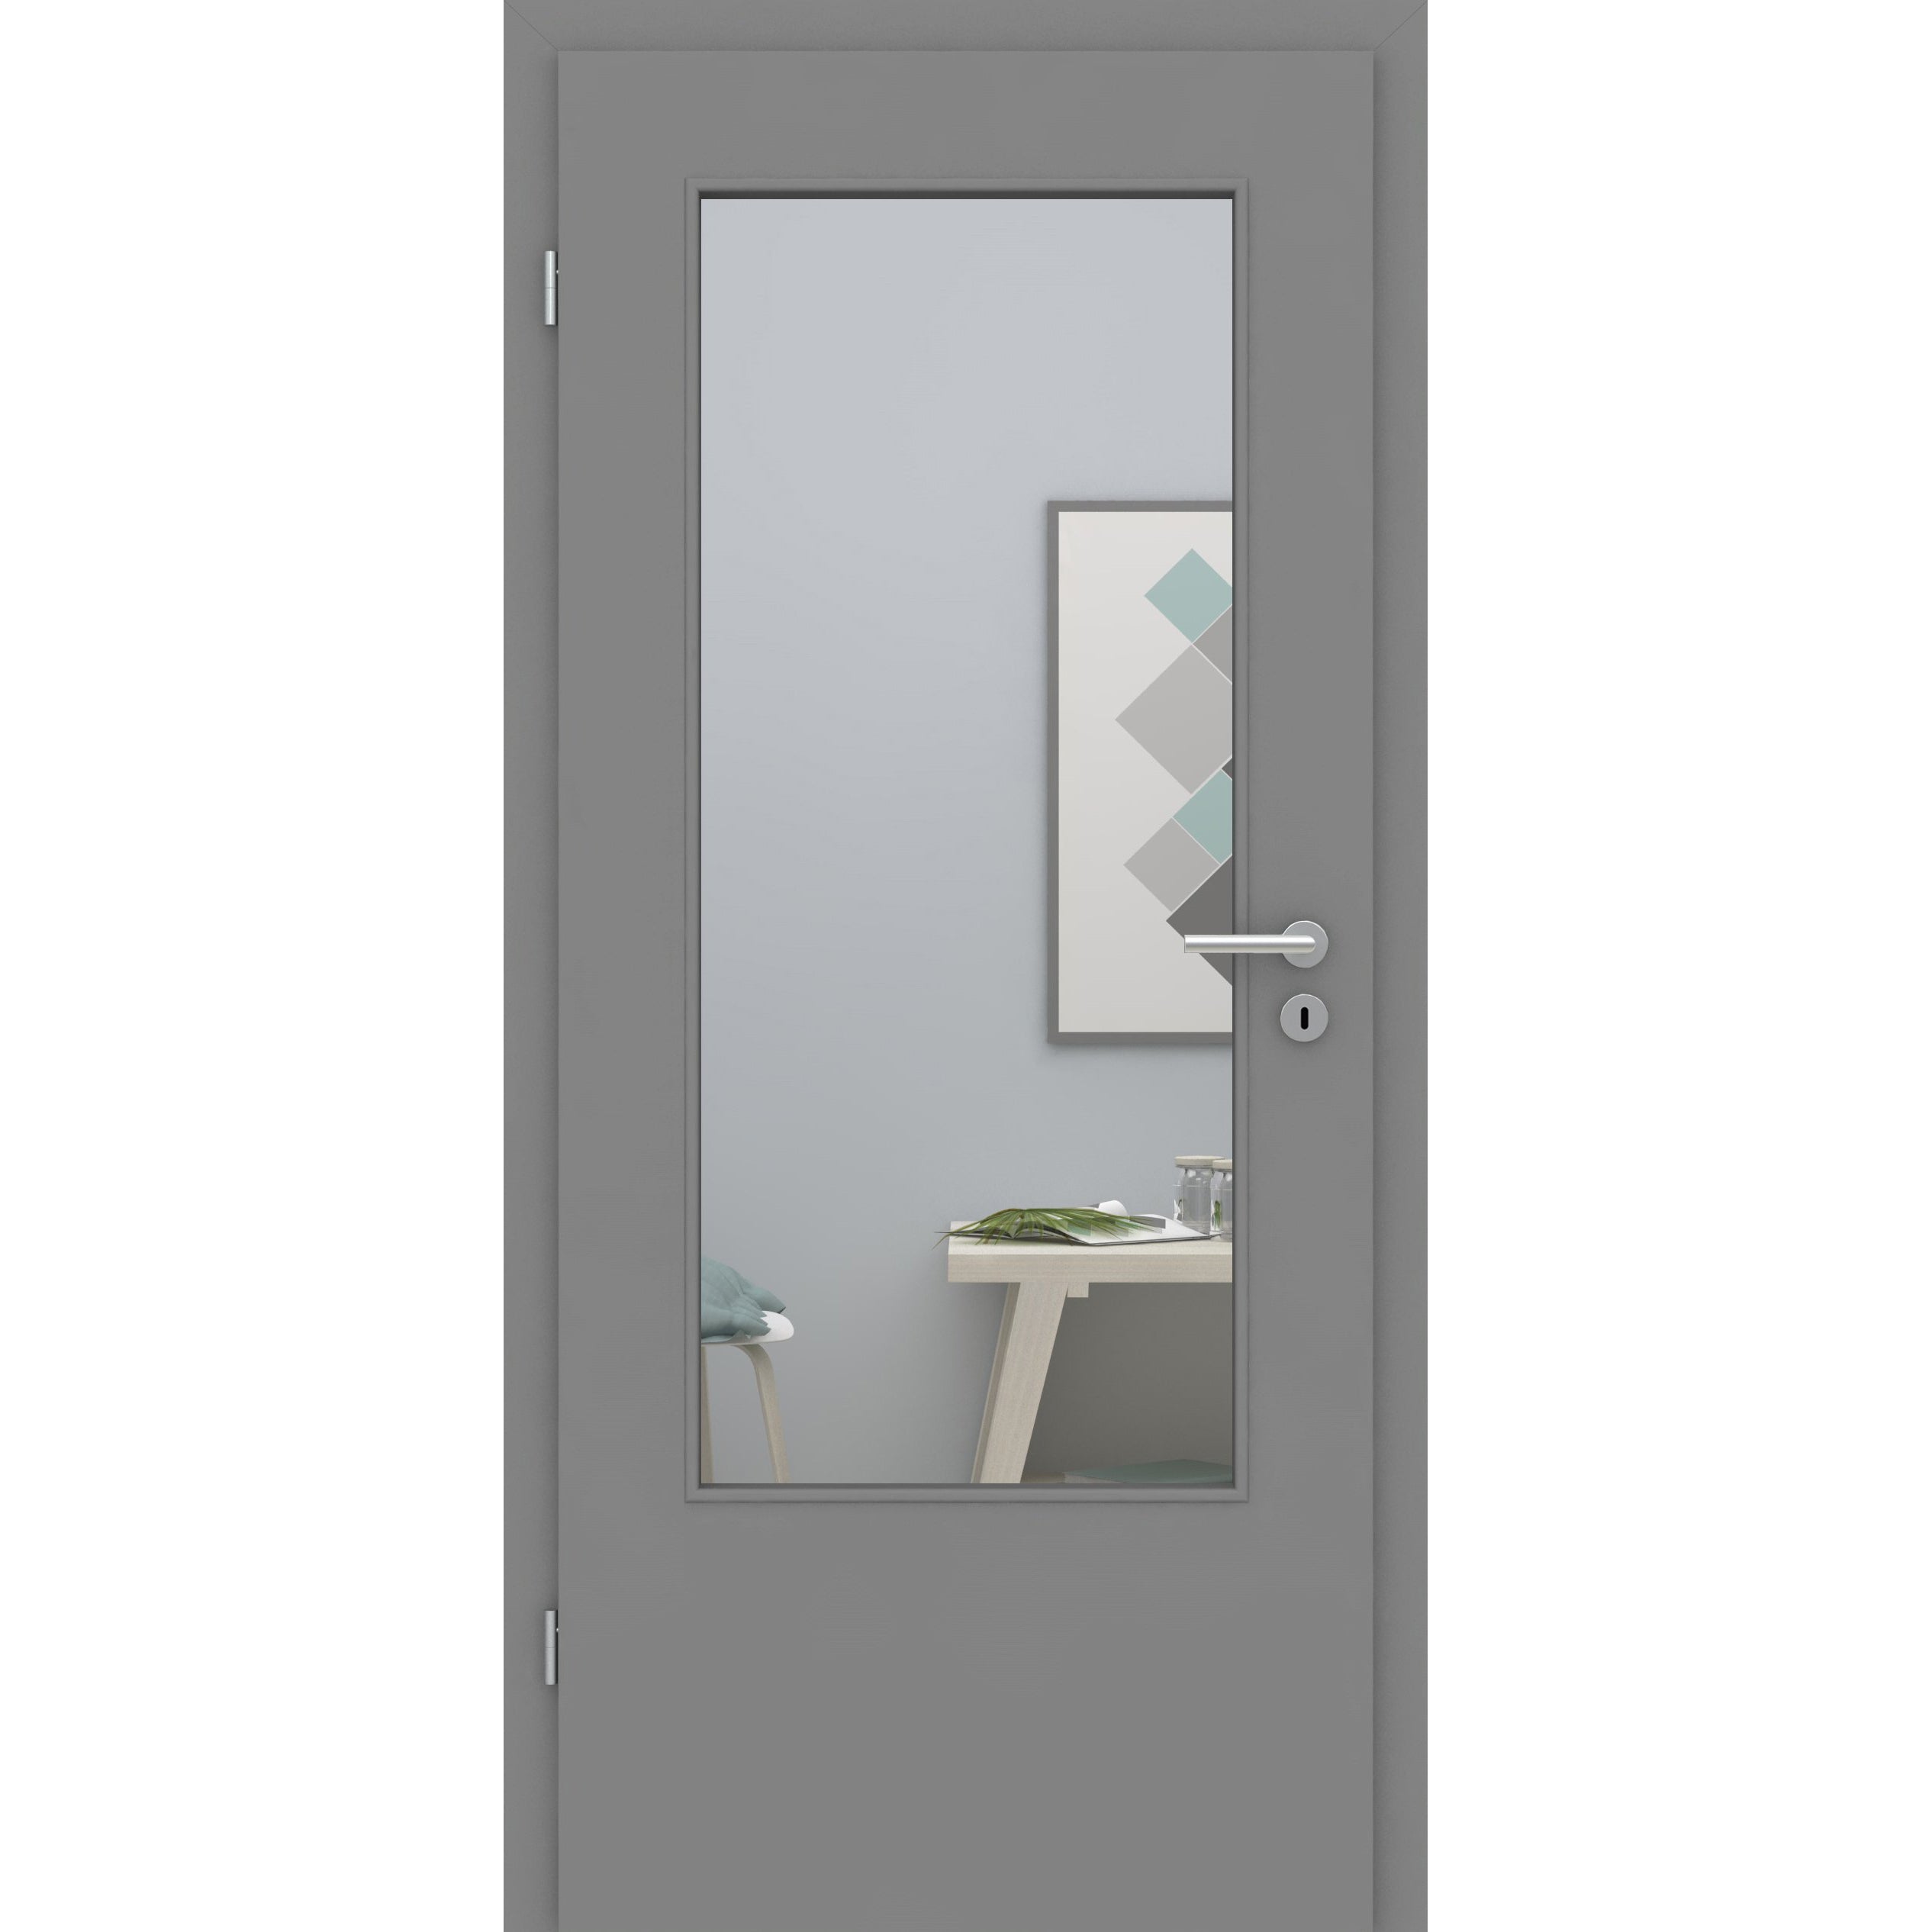 Zimmertür mit Lichtausschnitt DIN grau glatt Designkante - Modell LADIN